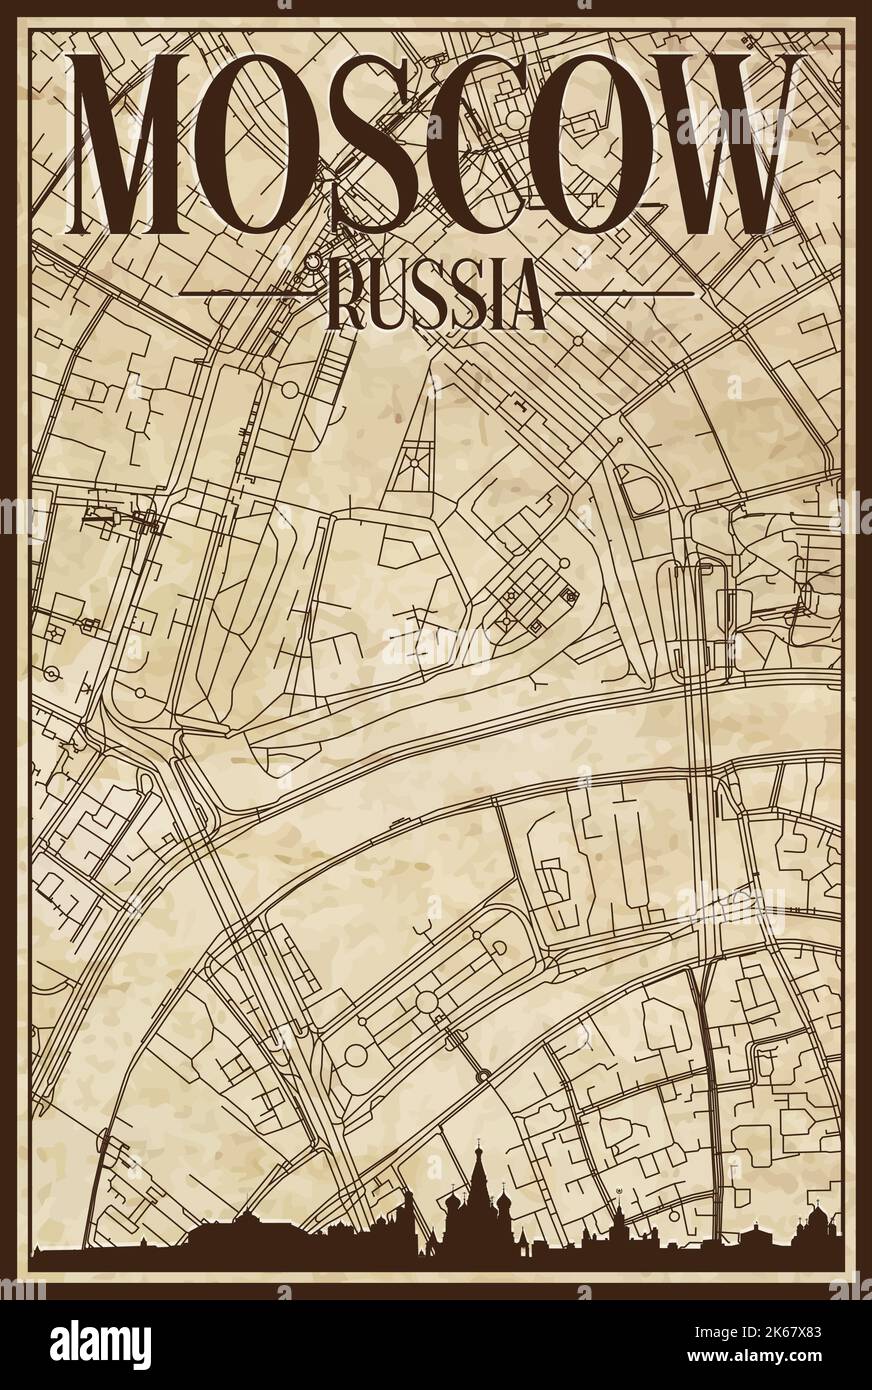 Braun vintage handgezeichneten Ausdruck Straßen Netzwerk Karte der Innenstadt VON MOSKAU, RUSSISCHE FÖDERATION mit braunen 3D Skyline und Schriftzug Stock Vektor